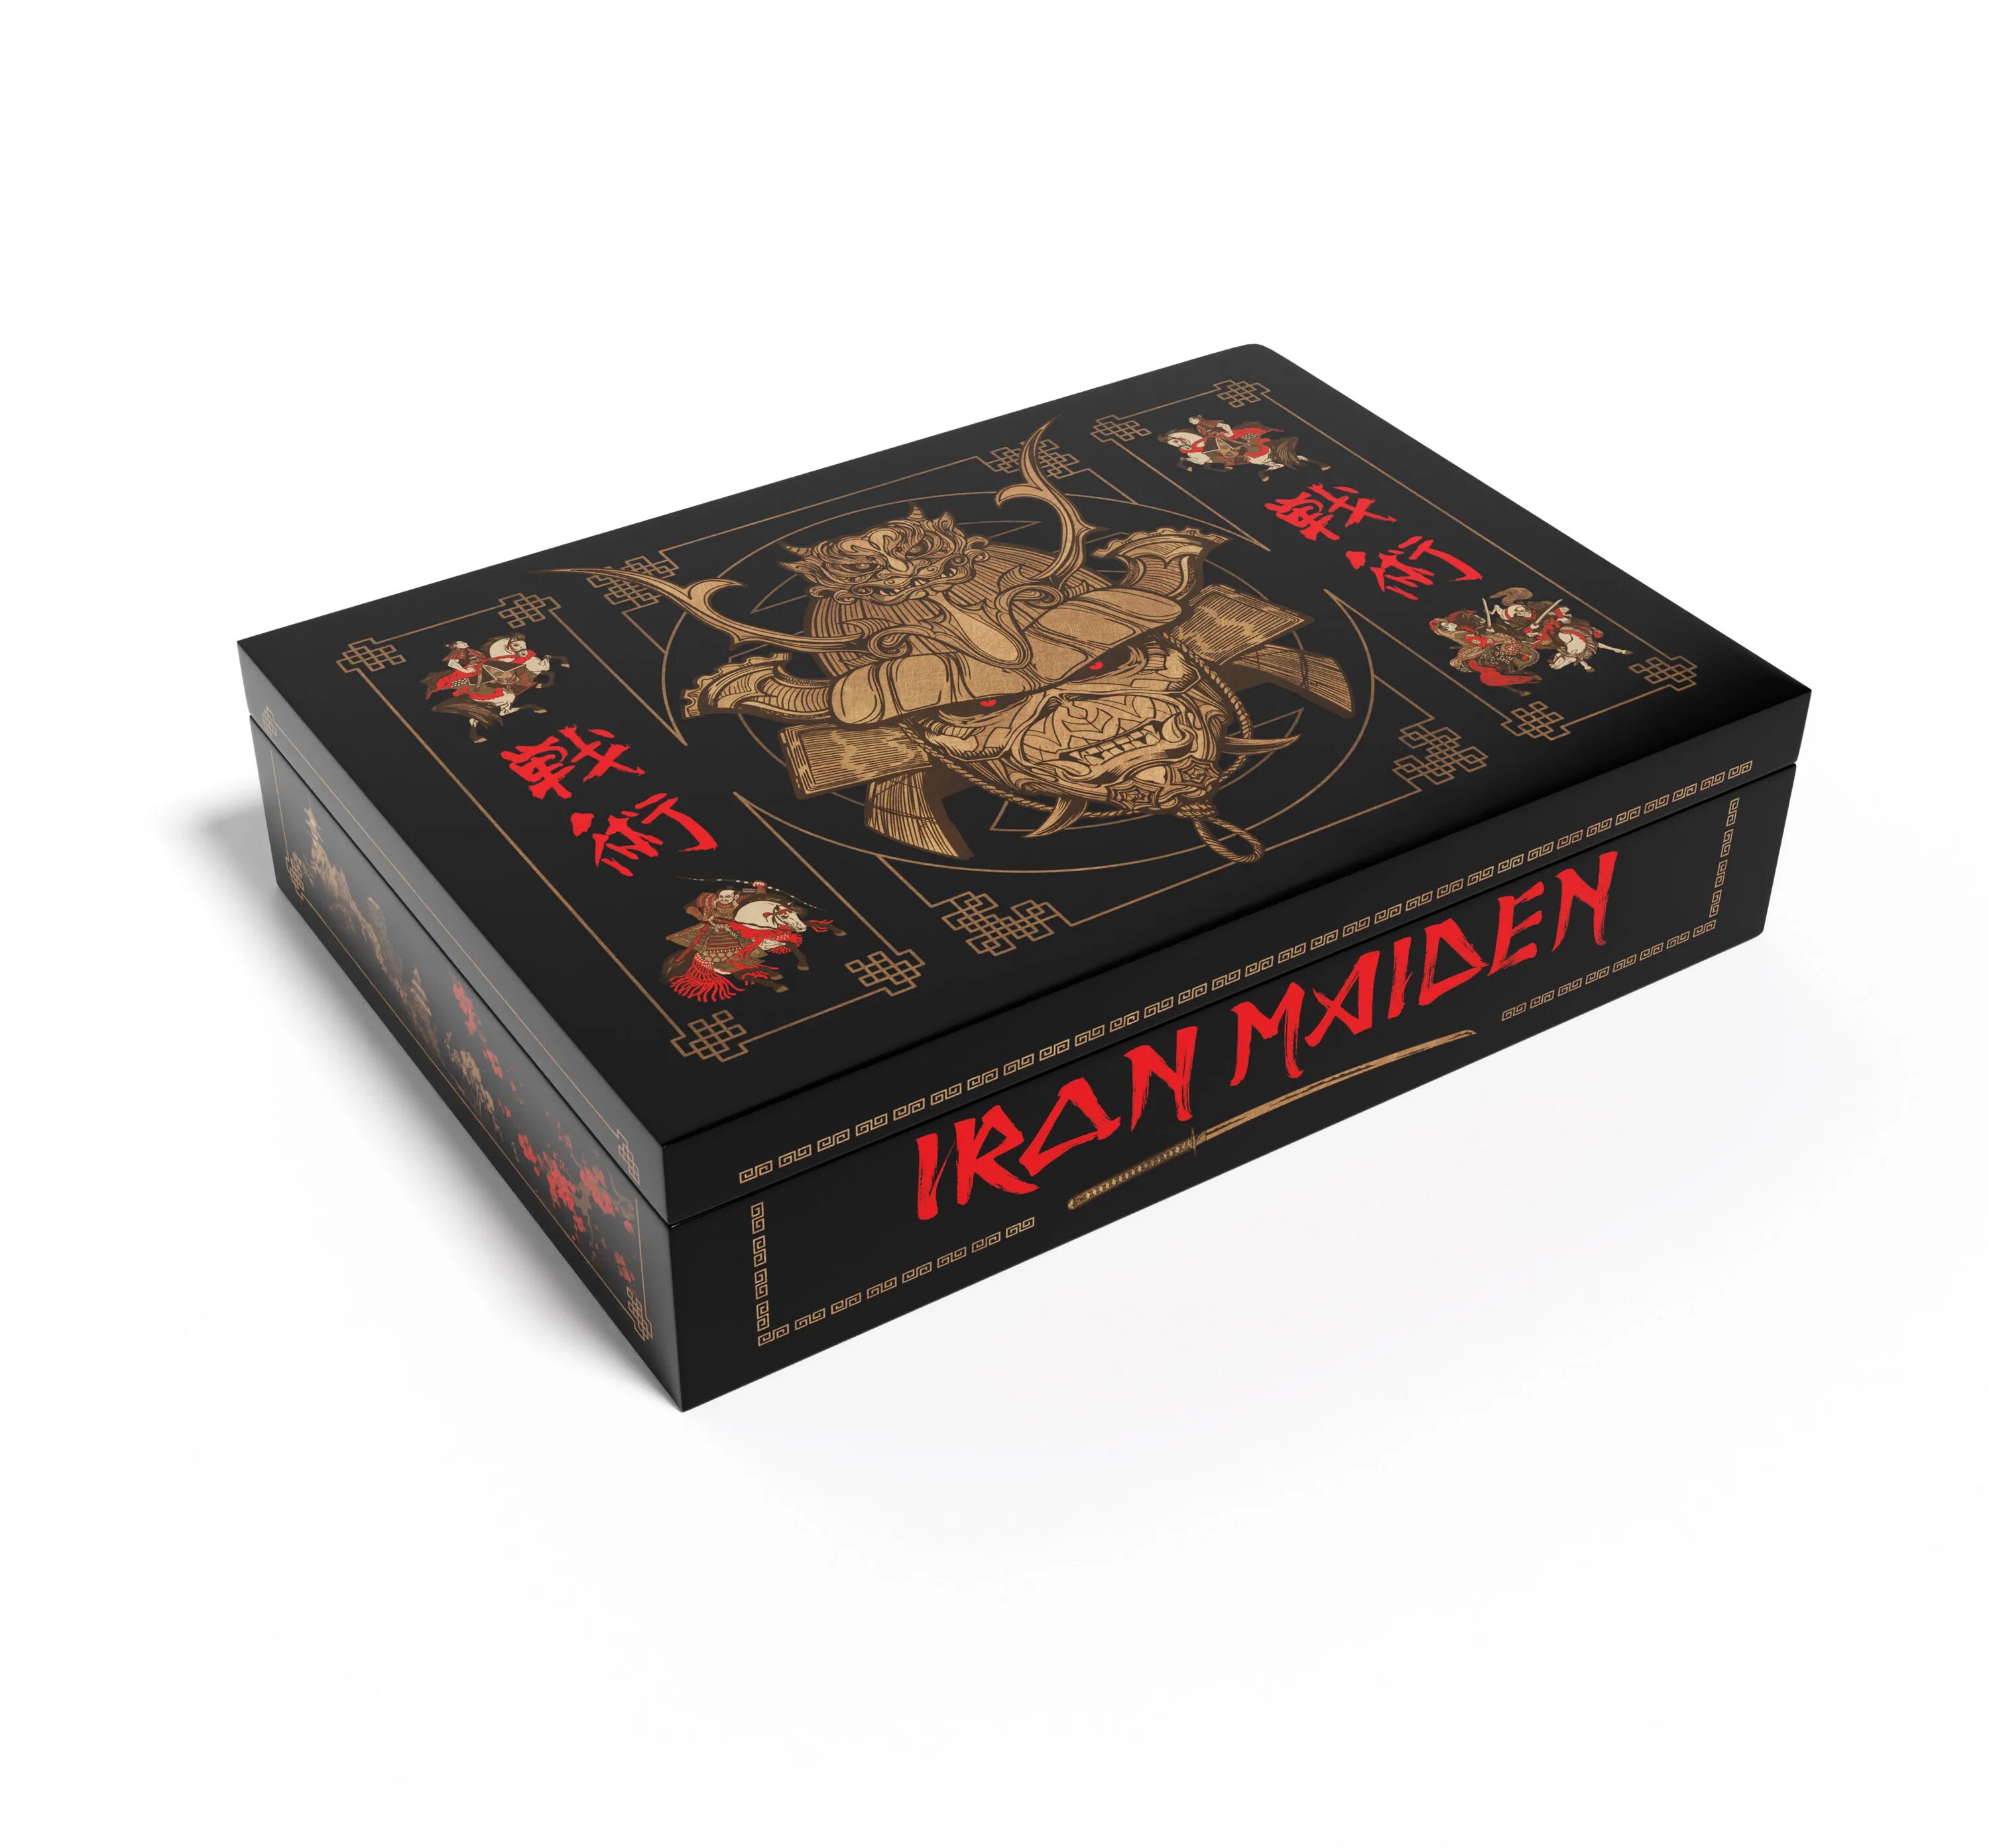 Senjutsu iron maiden. Iron Maiden 15 CD Box Set. Iron Maiden Box Set. Iron Maiden "Senjutsu". Iron Maiden - Senjutsu (Deluxe Edition 2cd) 2021 (lossless).